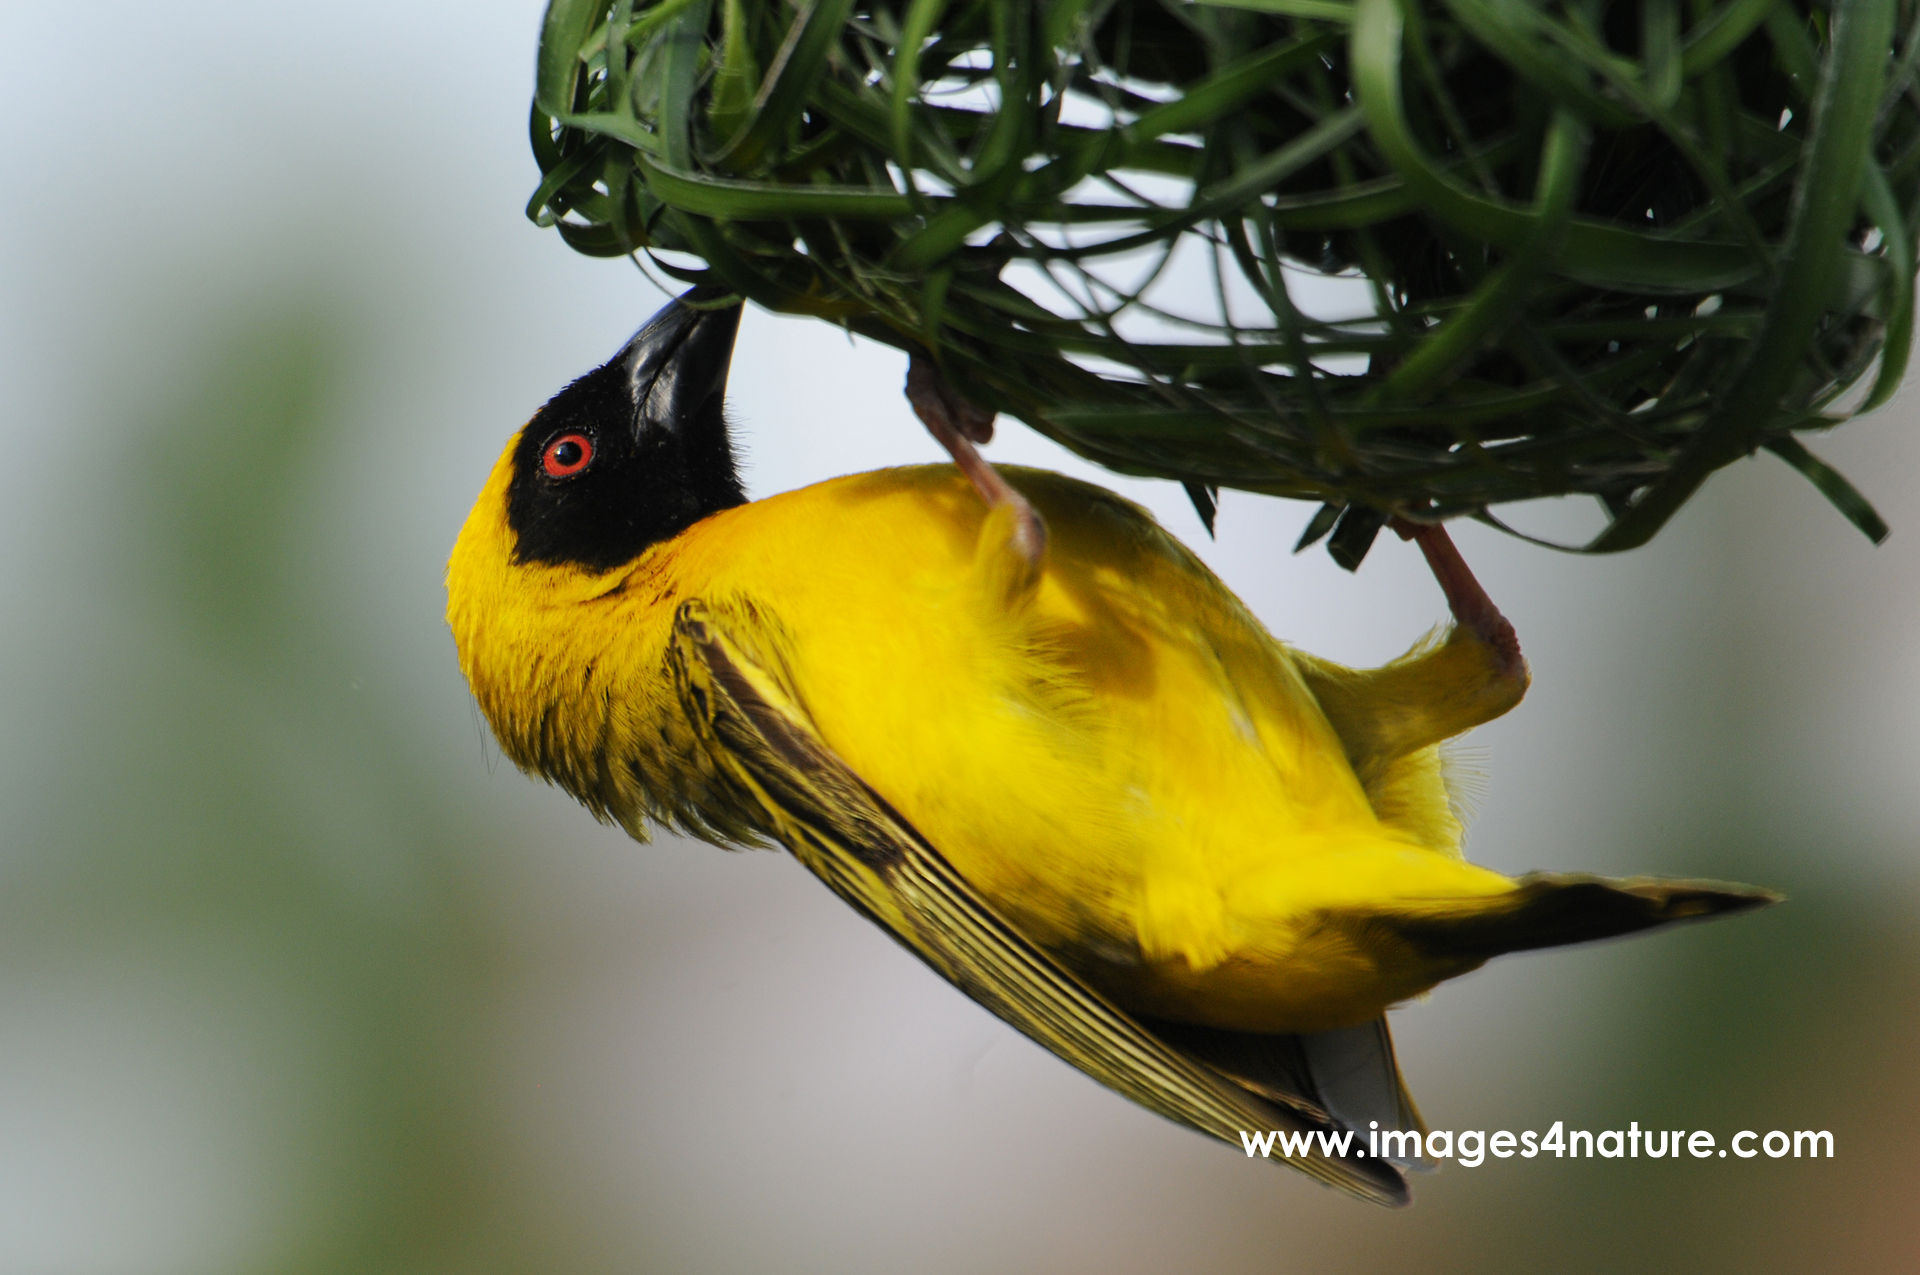 Yellow weaverbird artistically building a green nest using its beak